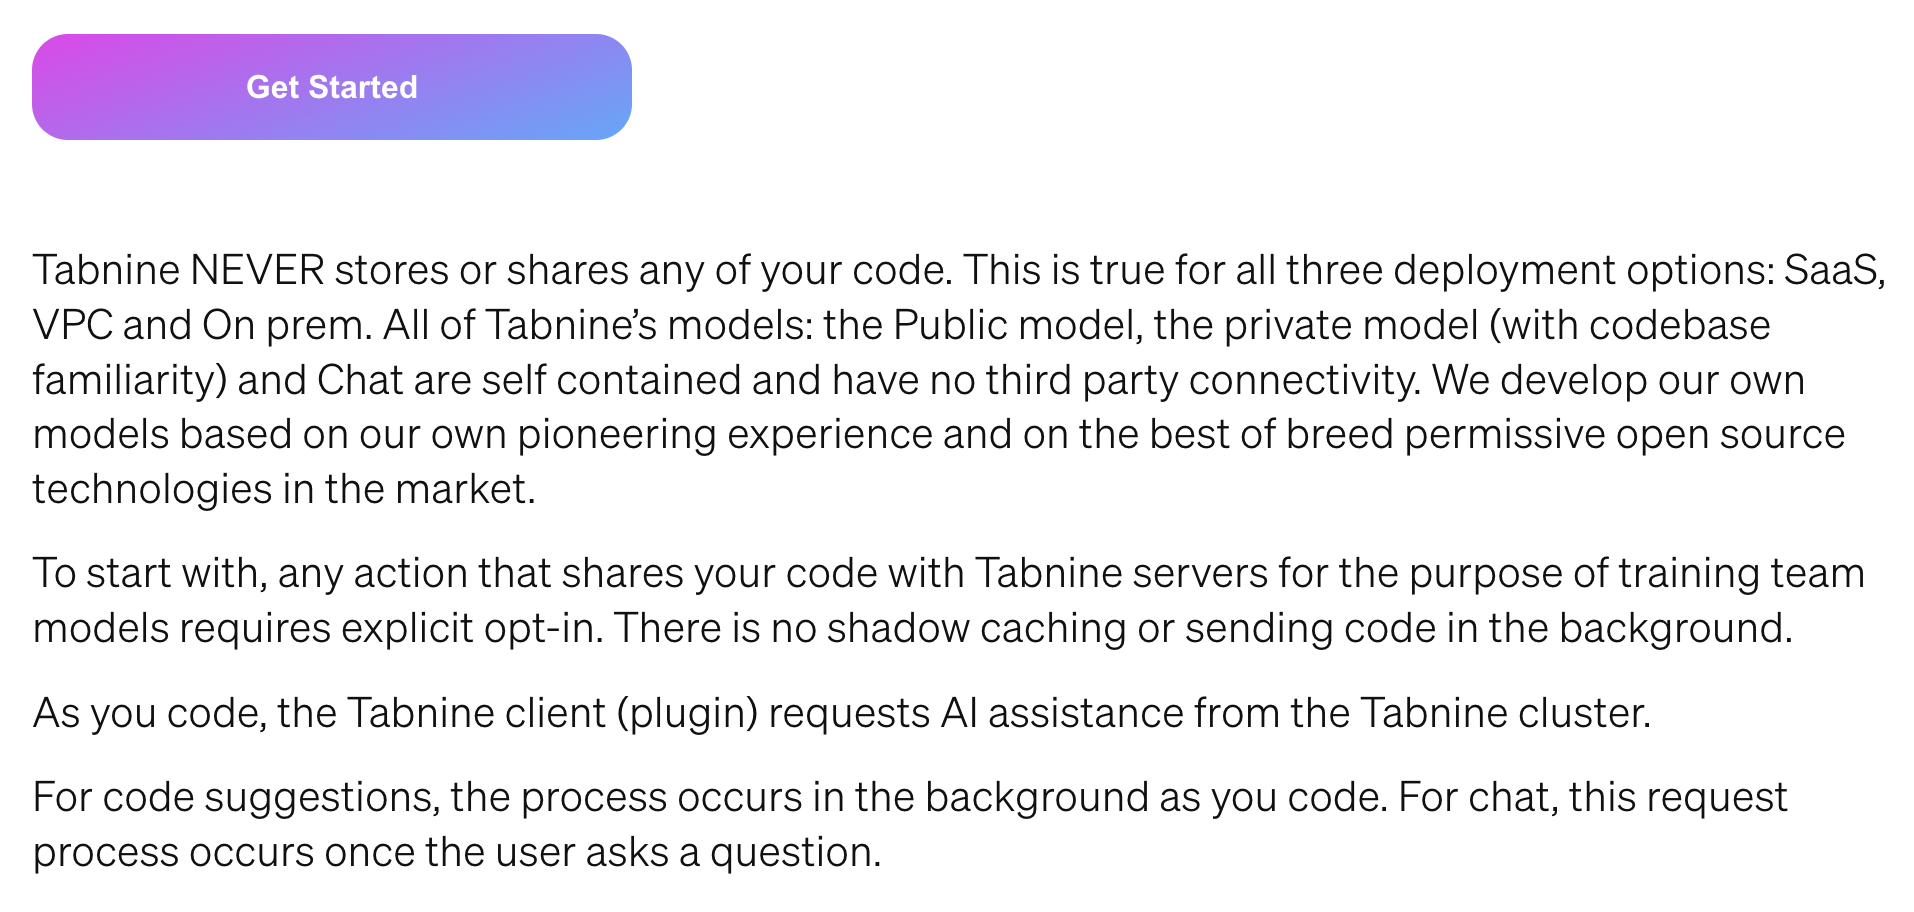 Разработчики делают особую ставку на приватность. Они утверждают, что Tabnine обучается на всех доступных проектах, но никогда не хранит готовые модели данных и не будет применять их в явном виде